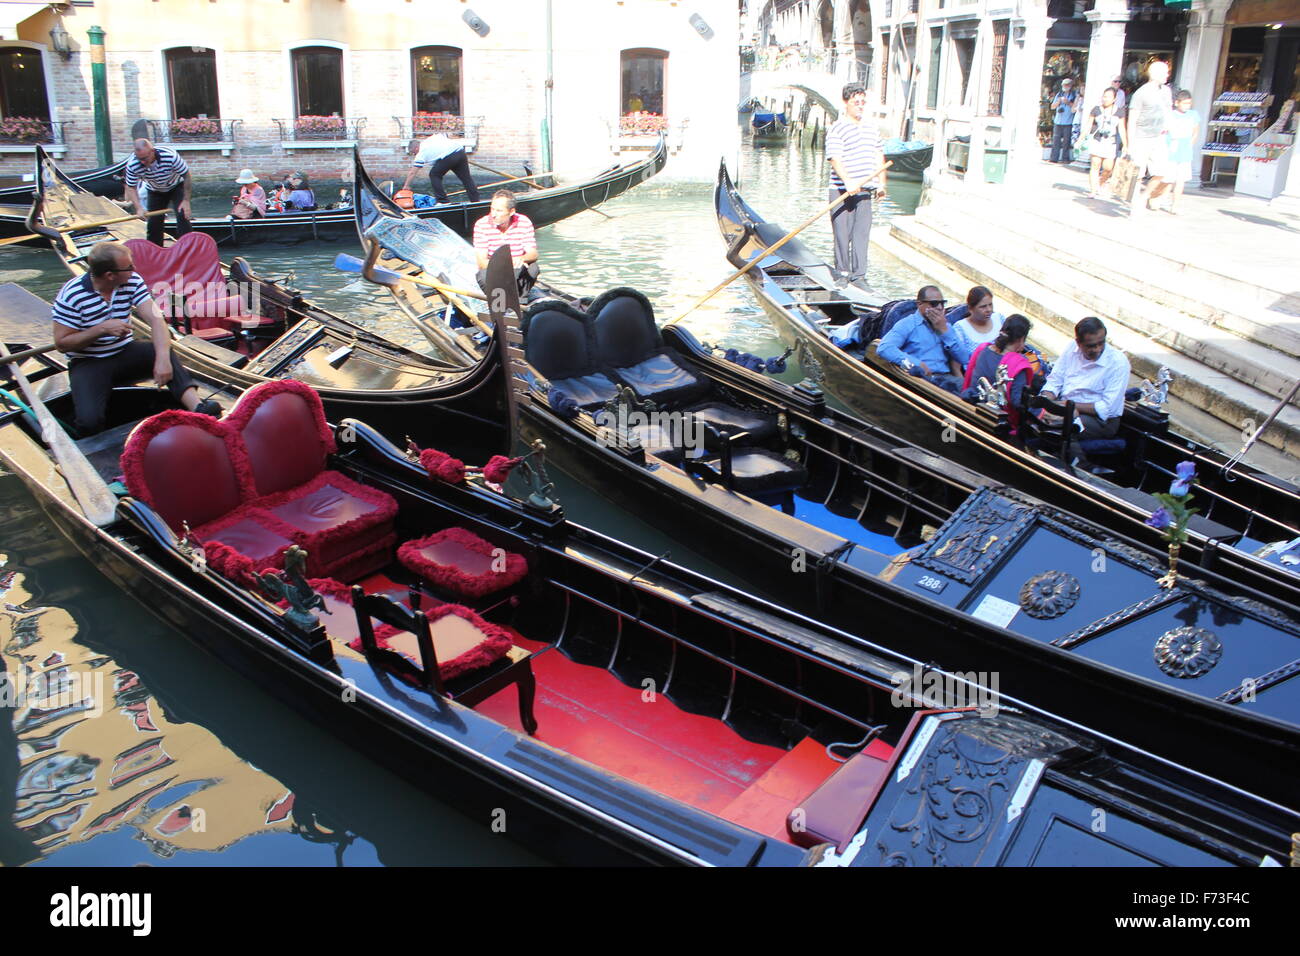 A gondola station in Venice, Italy Stock Photo